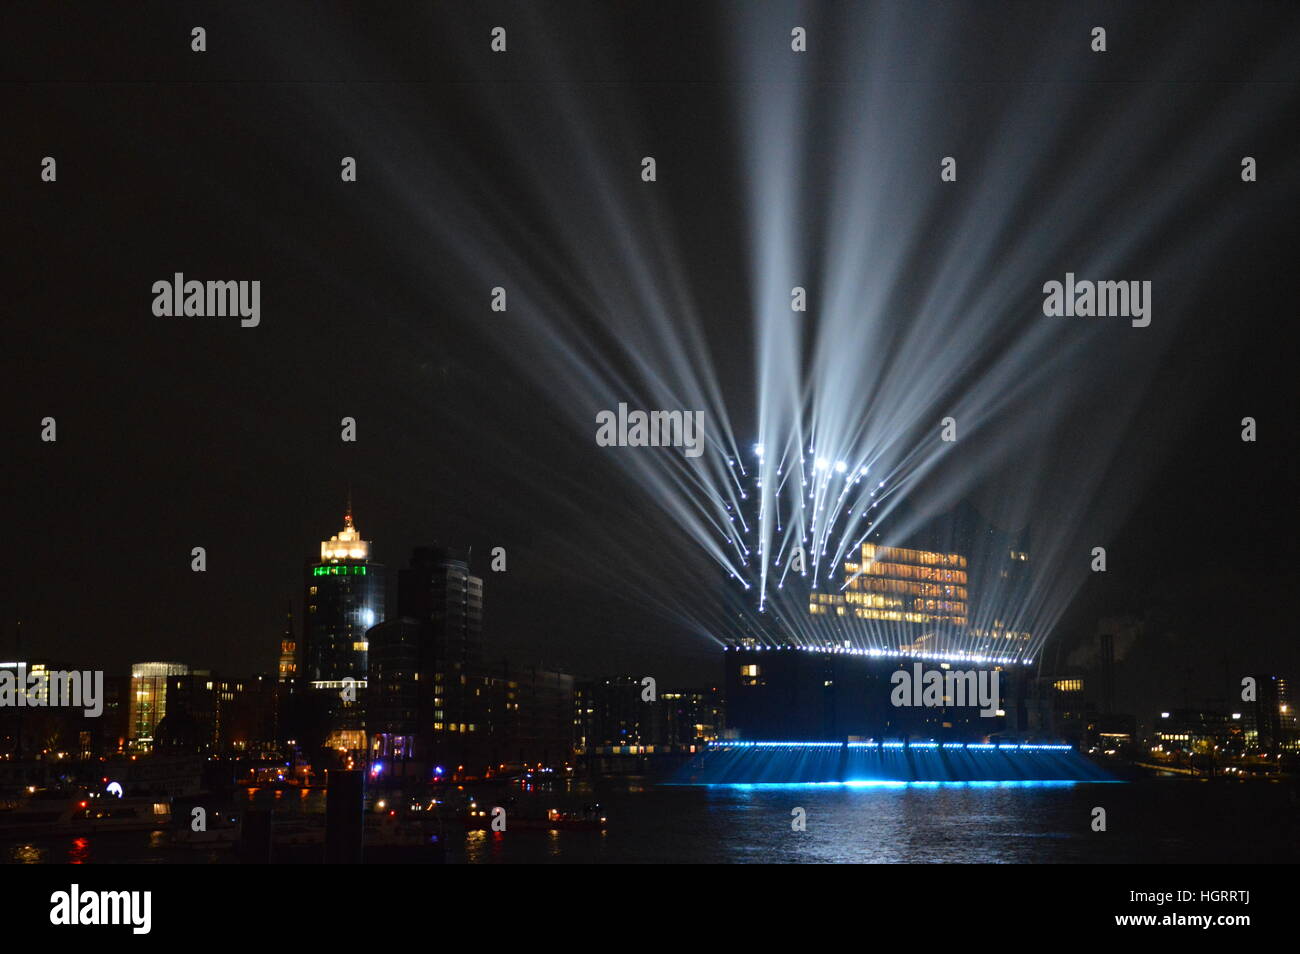 Hambourg, Allemagne. 11 janvier 2017.Le nouveau symbole de Hambourg, l'Elbphilharmonie concert hall, ouvert avec une grande lumière. Credit : Markku Rainer Peltonen/Alamy Live News Banque D'Images